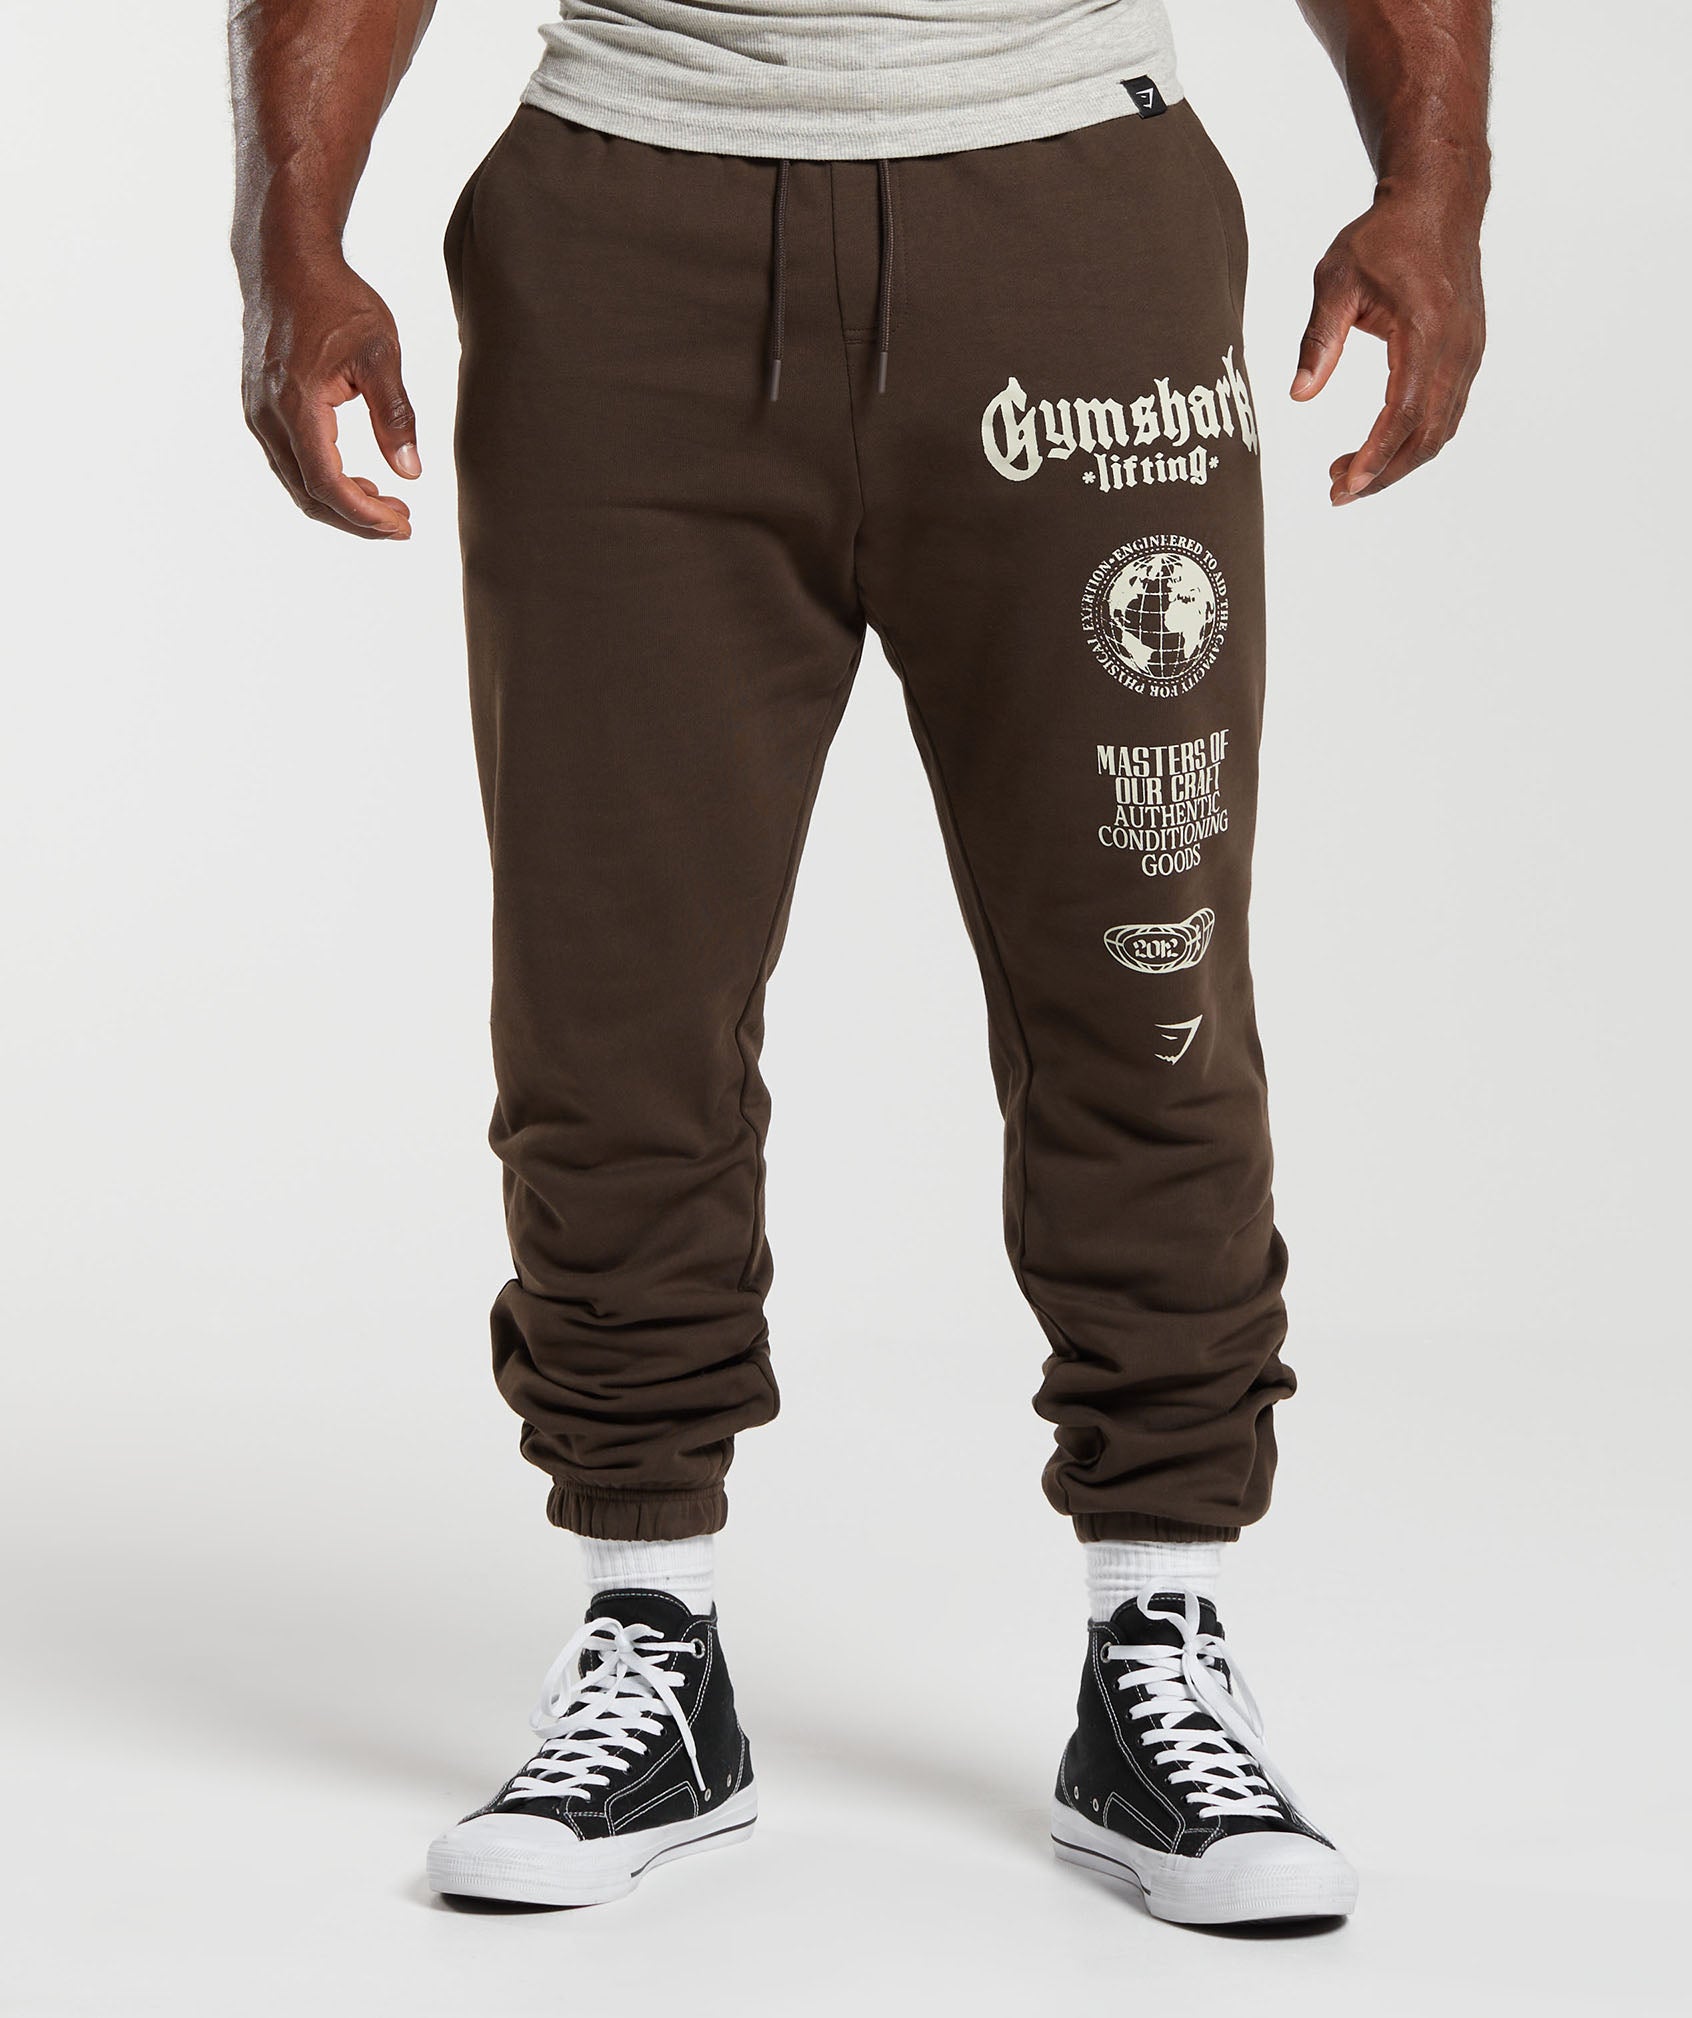 Gymshark Global Lifting Oversized Pants - Brown